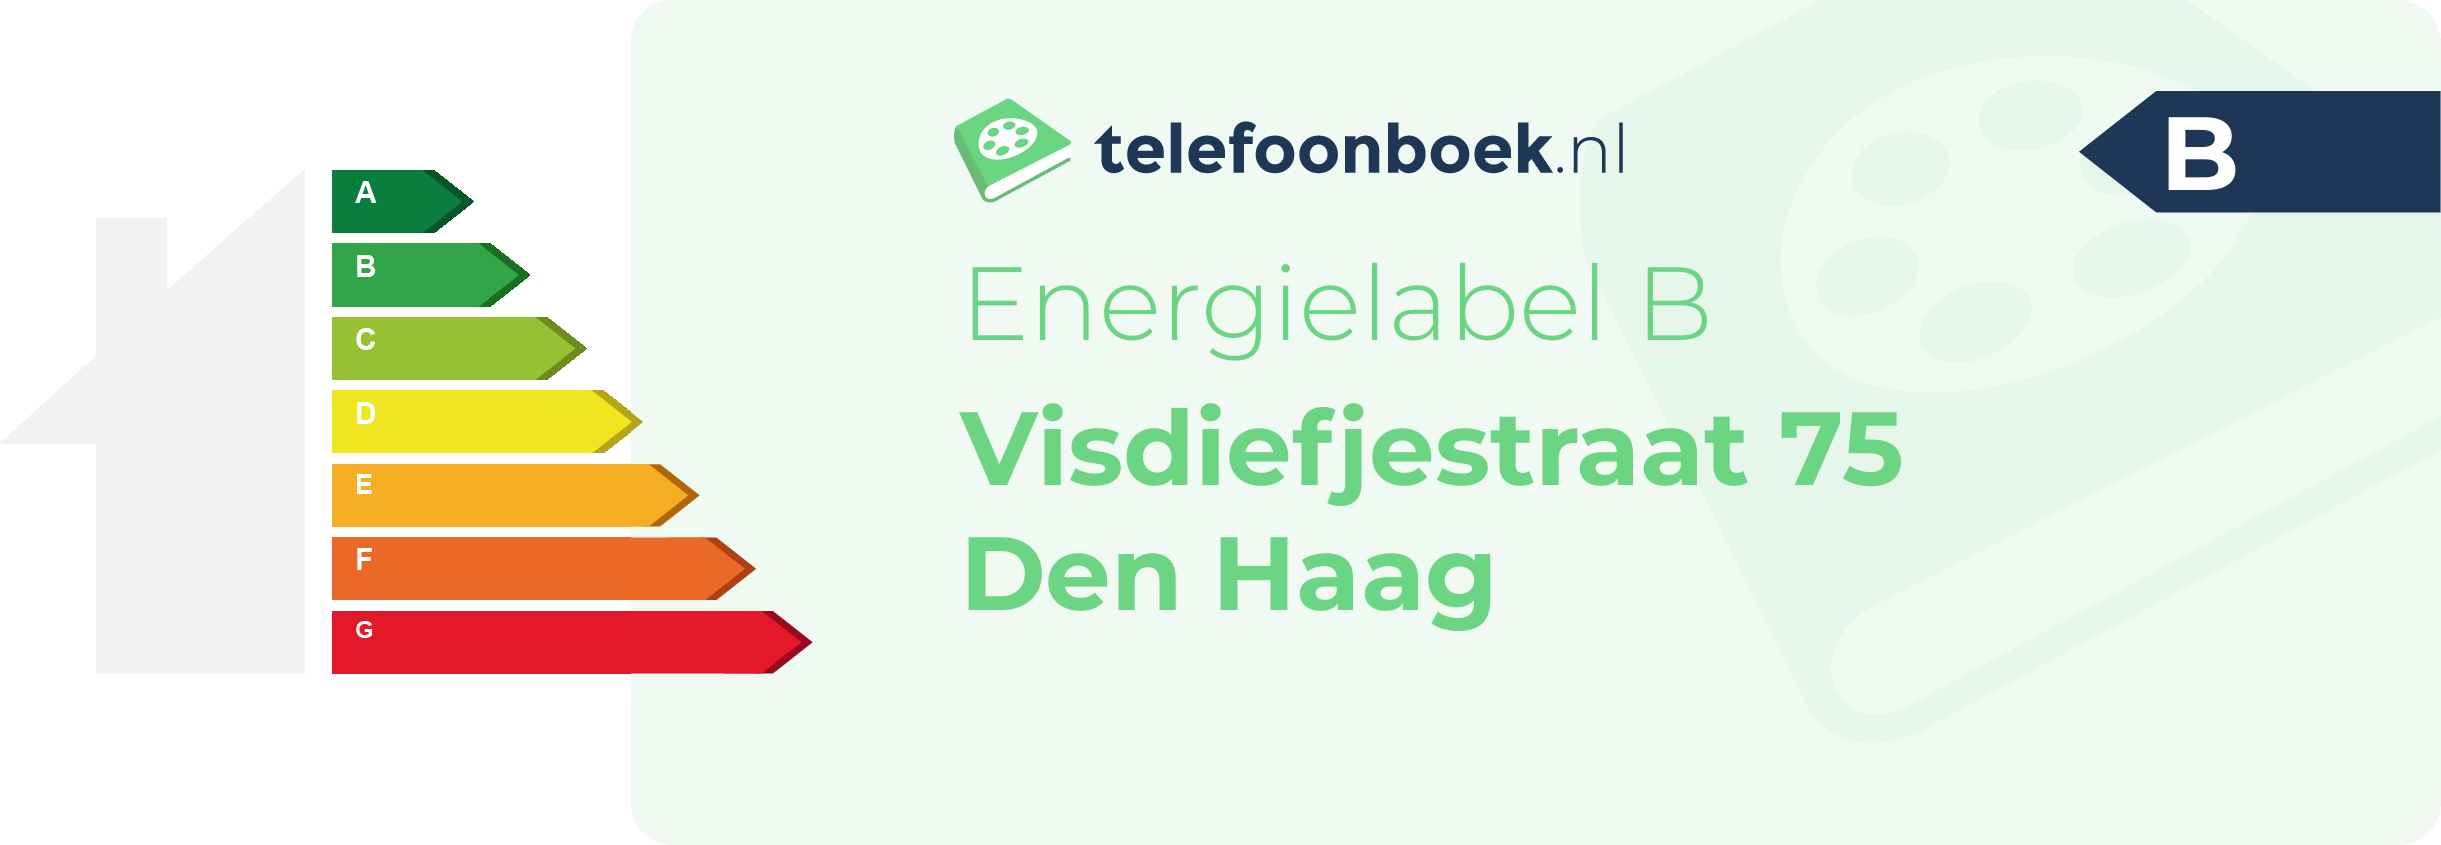 Energielabel Visdiefjestraat 75 Den Haag